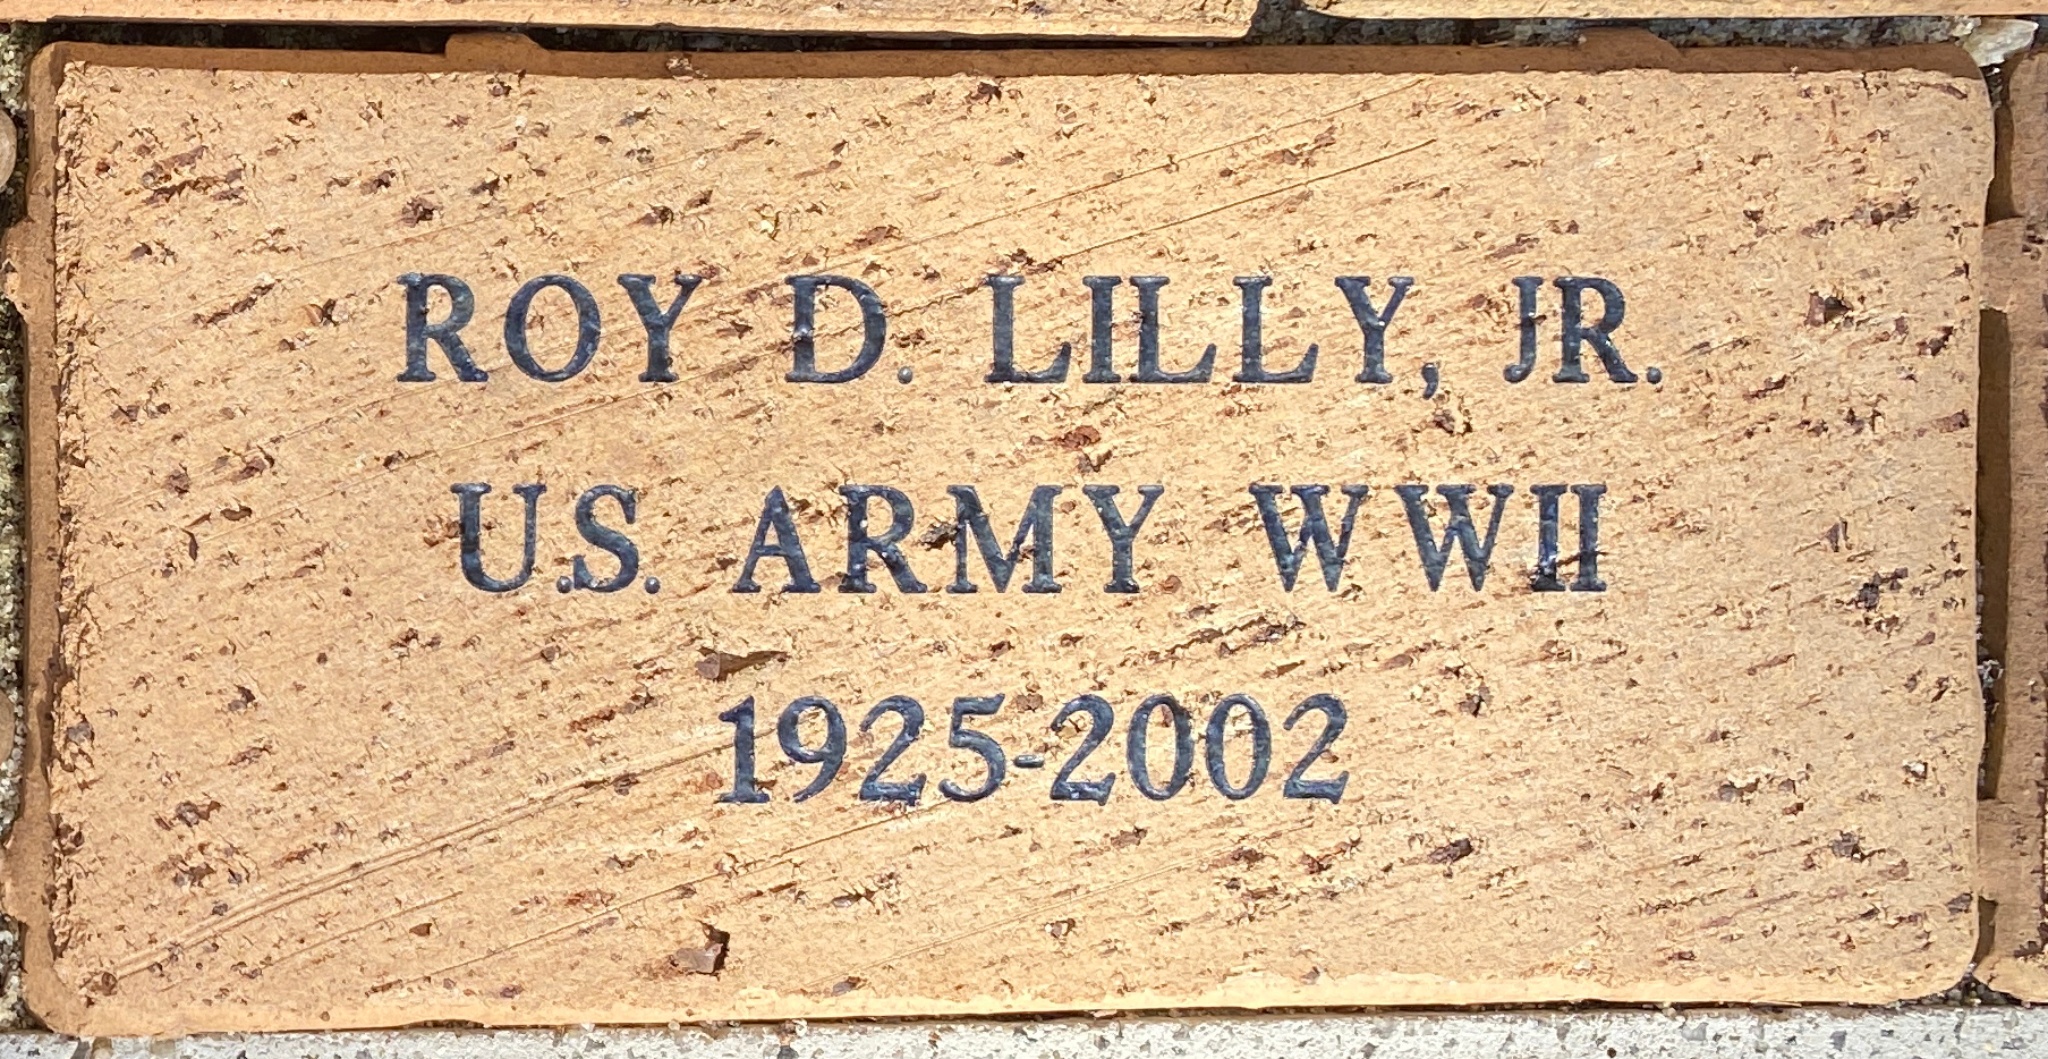 ROY D. LILLY, JR. U.S. ARMY WWII 1925-2002